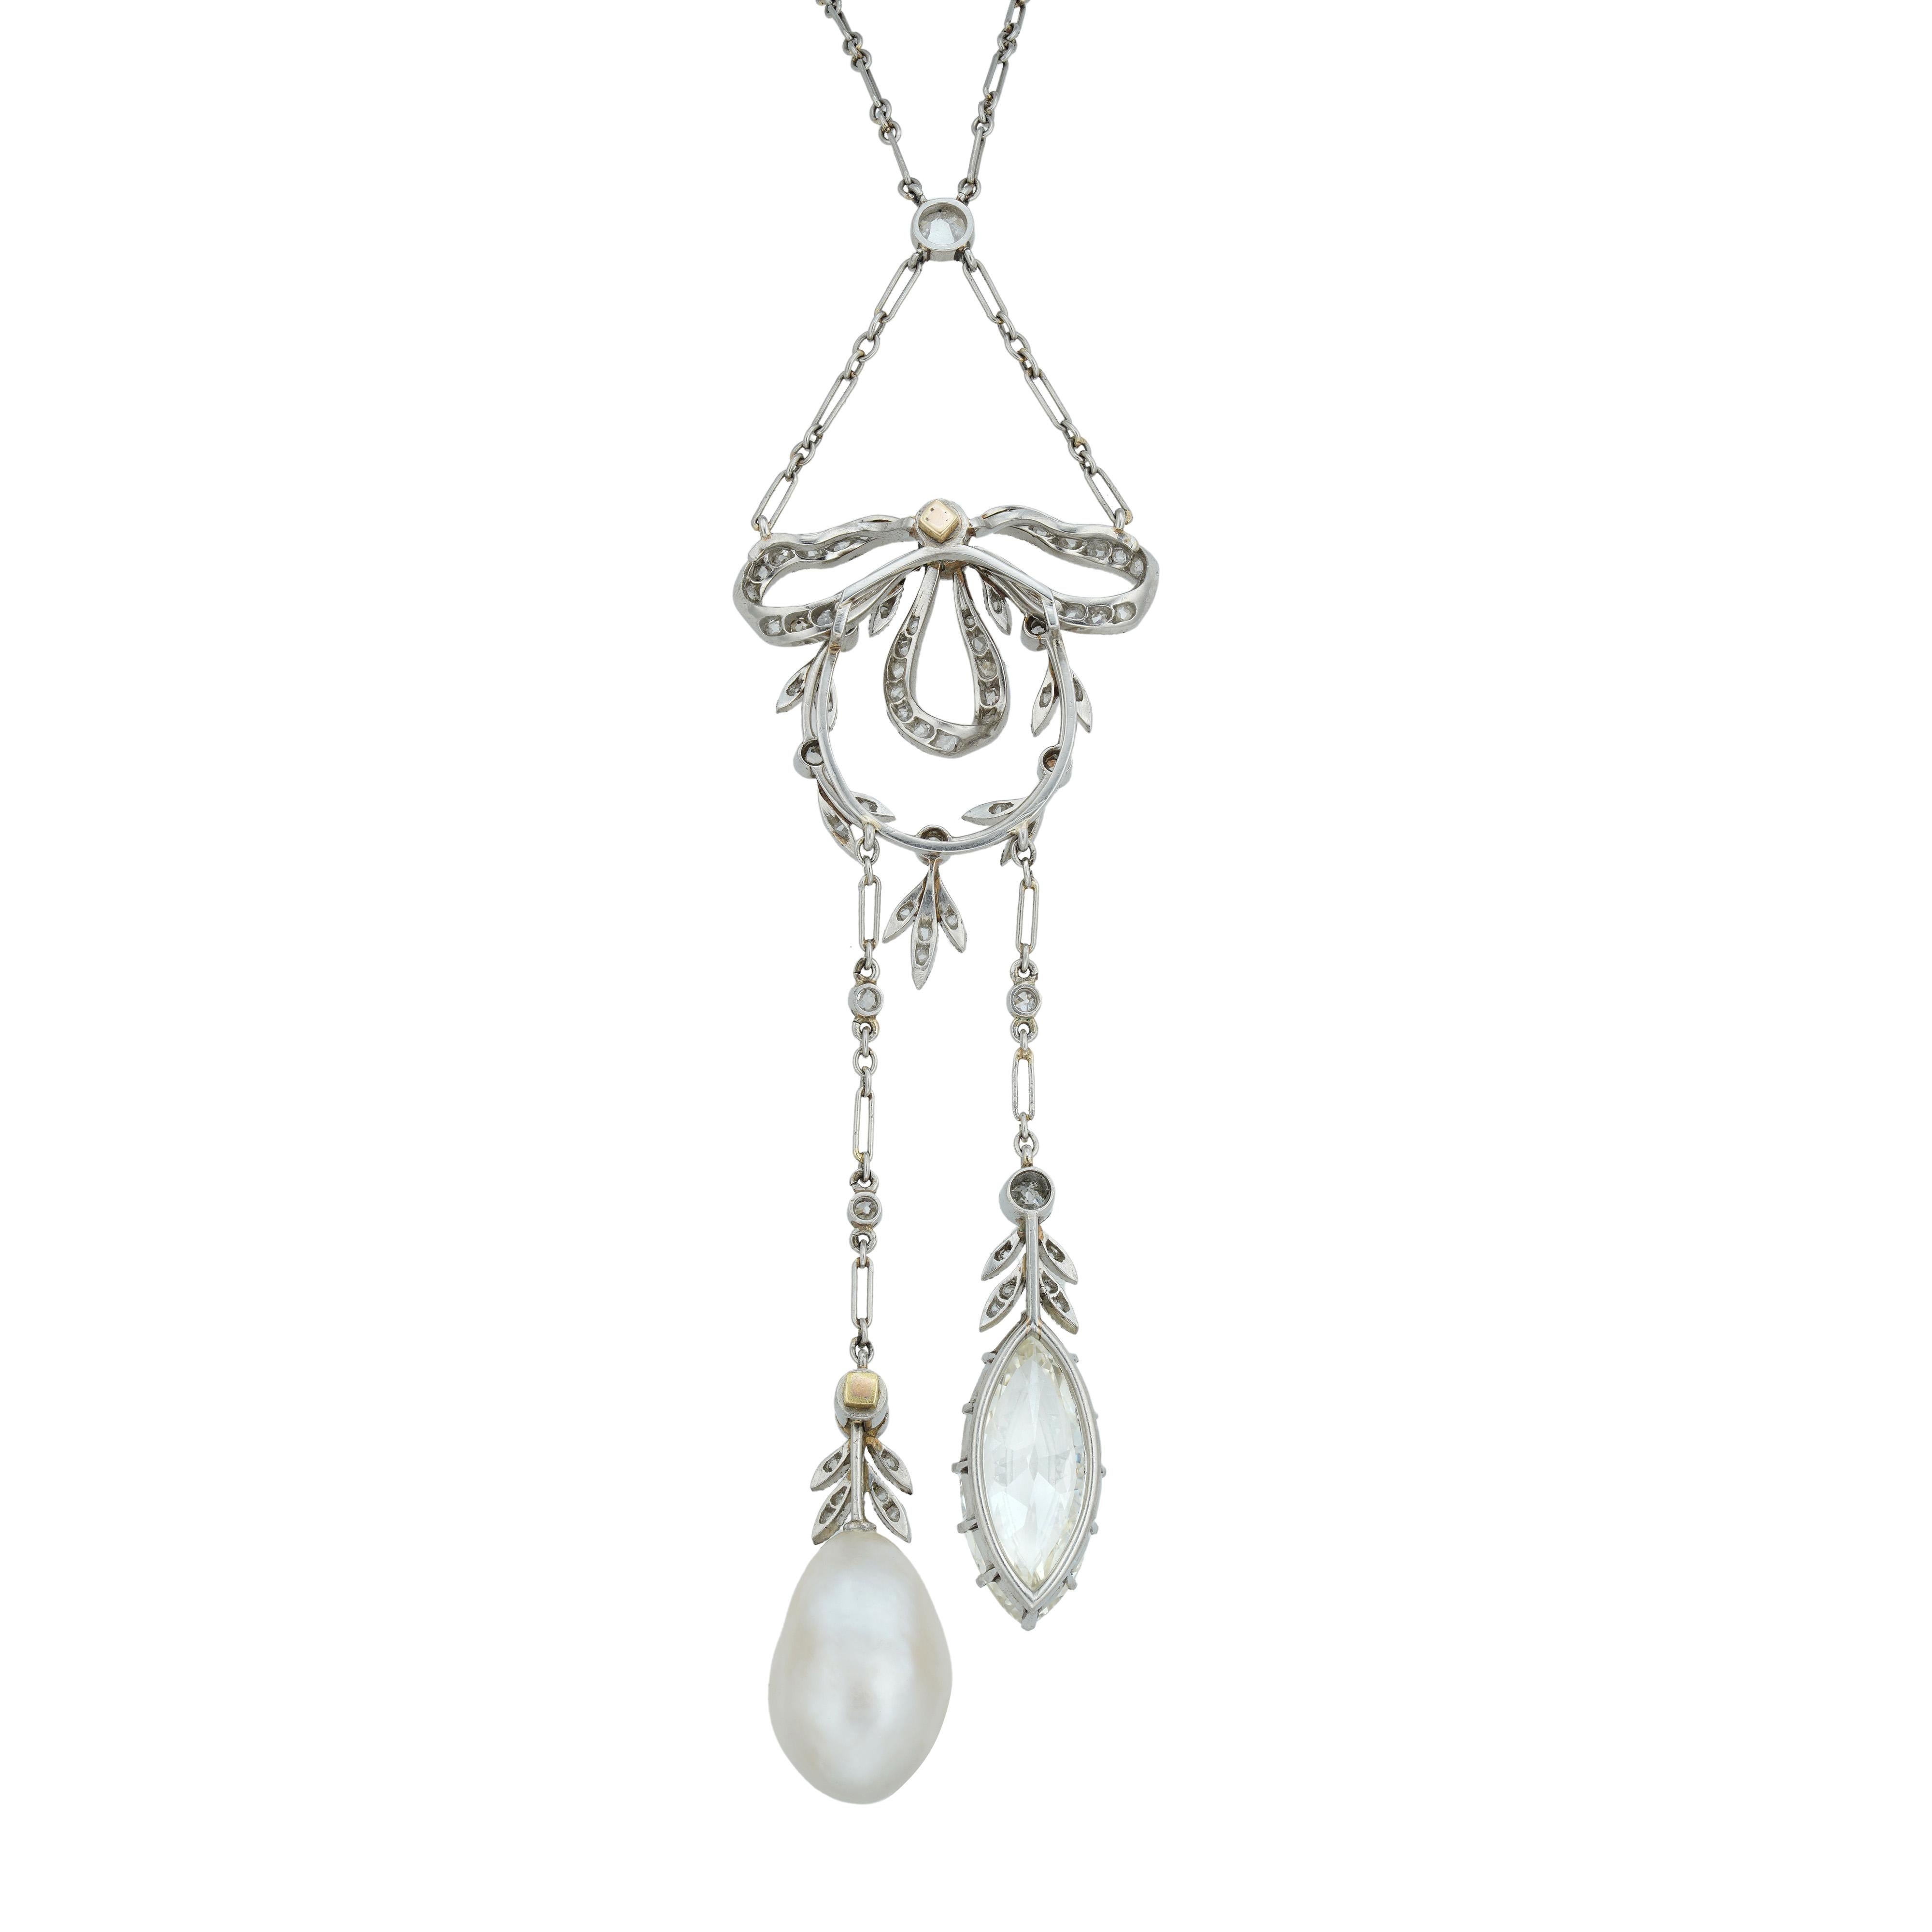 Collier négligé Belle Époque en diamant et perle naturelle par Marret Frères, composé d'un nœud et d'une couronne sertis de diamants, suspendant deux chutes asymétriques serties de diamants, l'une se terminant par un diamant taille marquise pesant